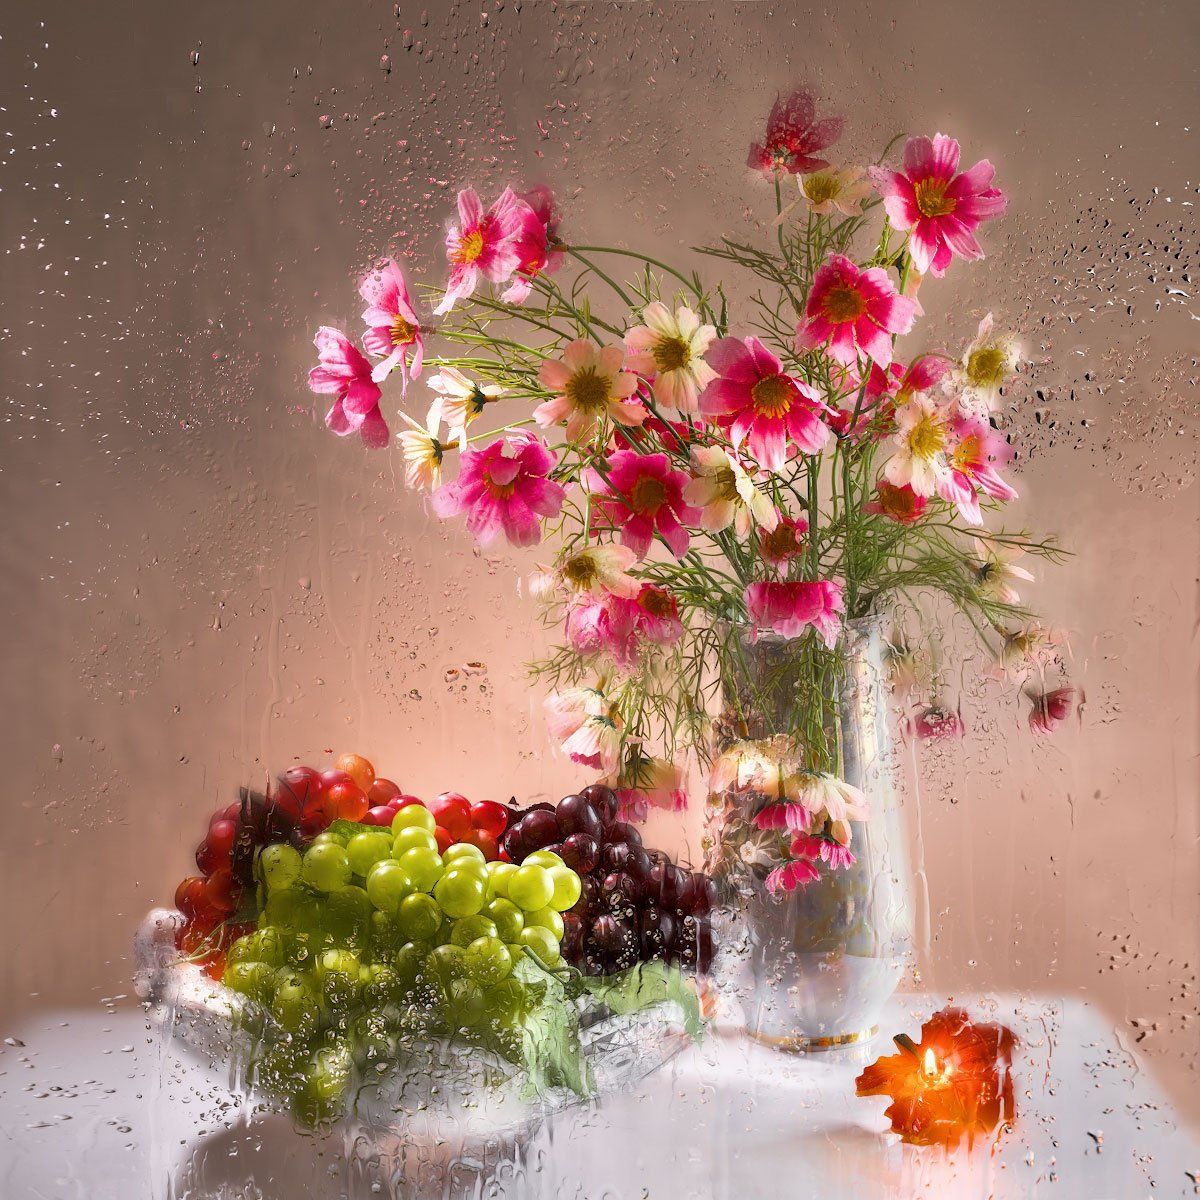 натюрморт, розовые тона, потёки воды, пламя, виноград, настроение, стекло, Tom Fincher